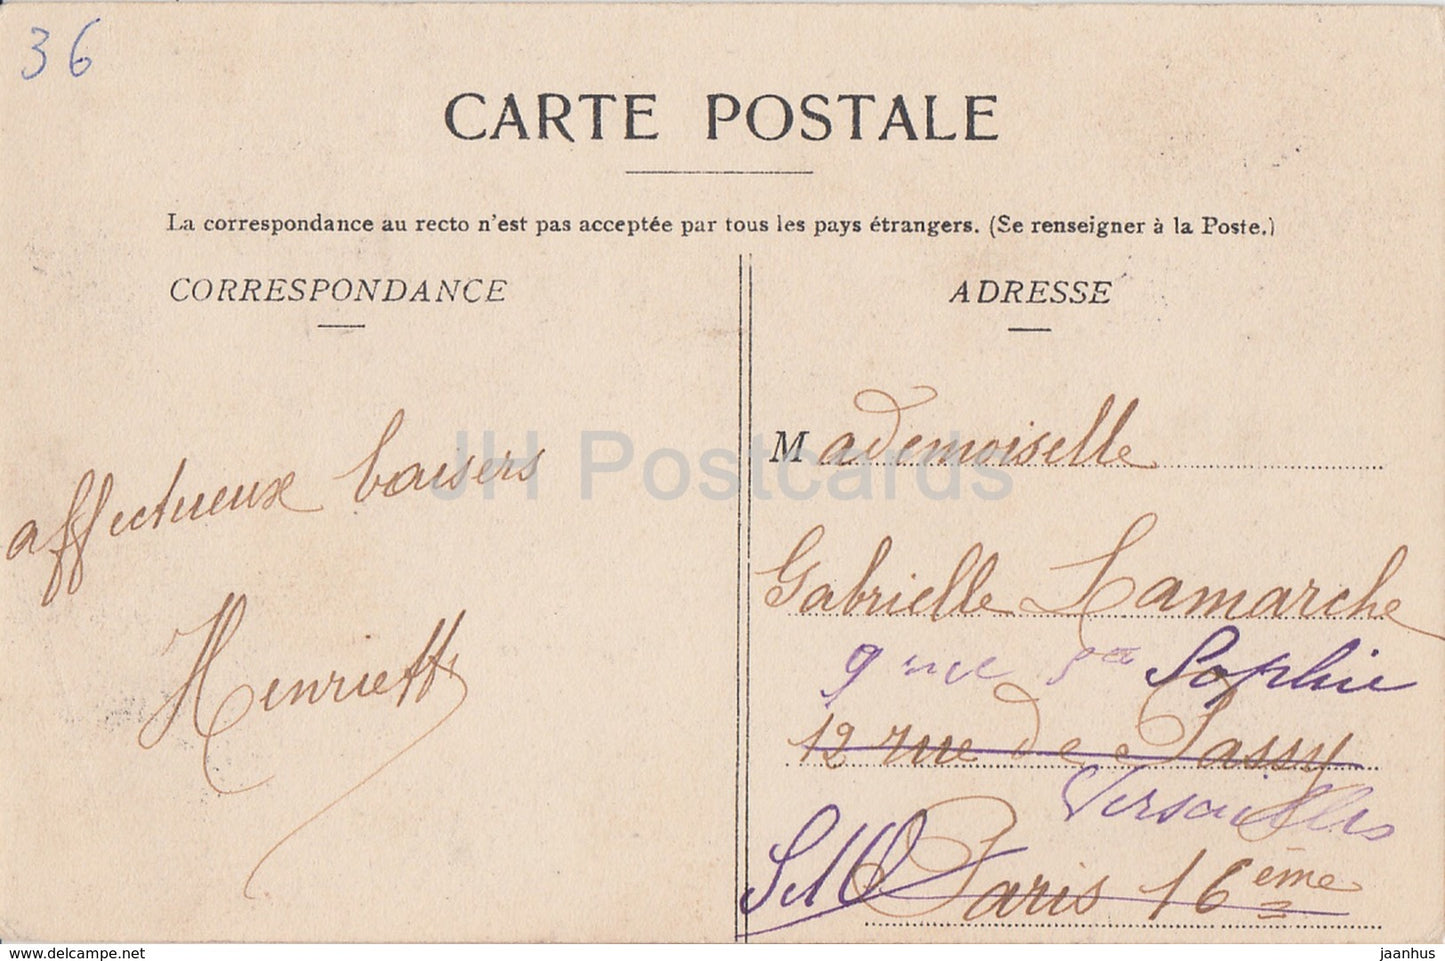 Moulins sur Cephons - Chateau du Pin - castle - old postcard - 1905 - France - used